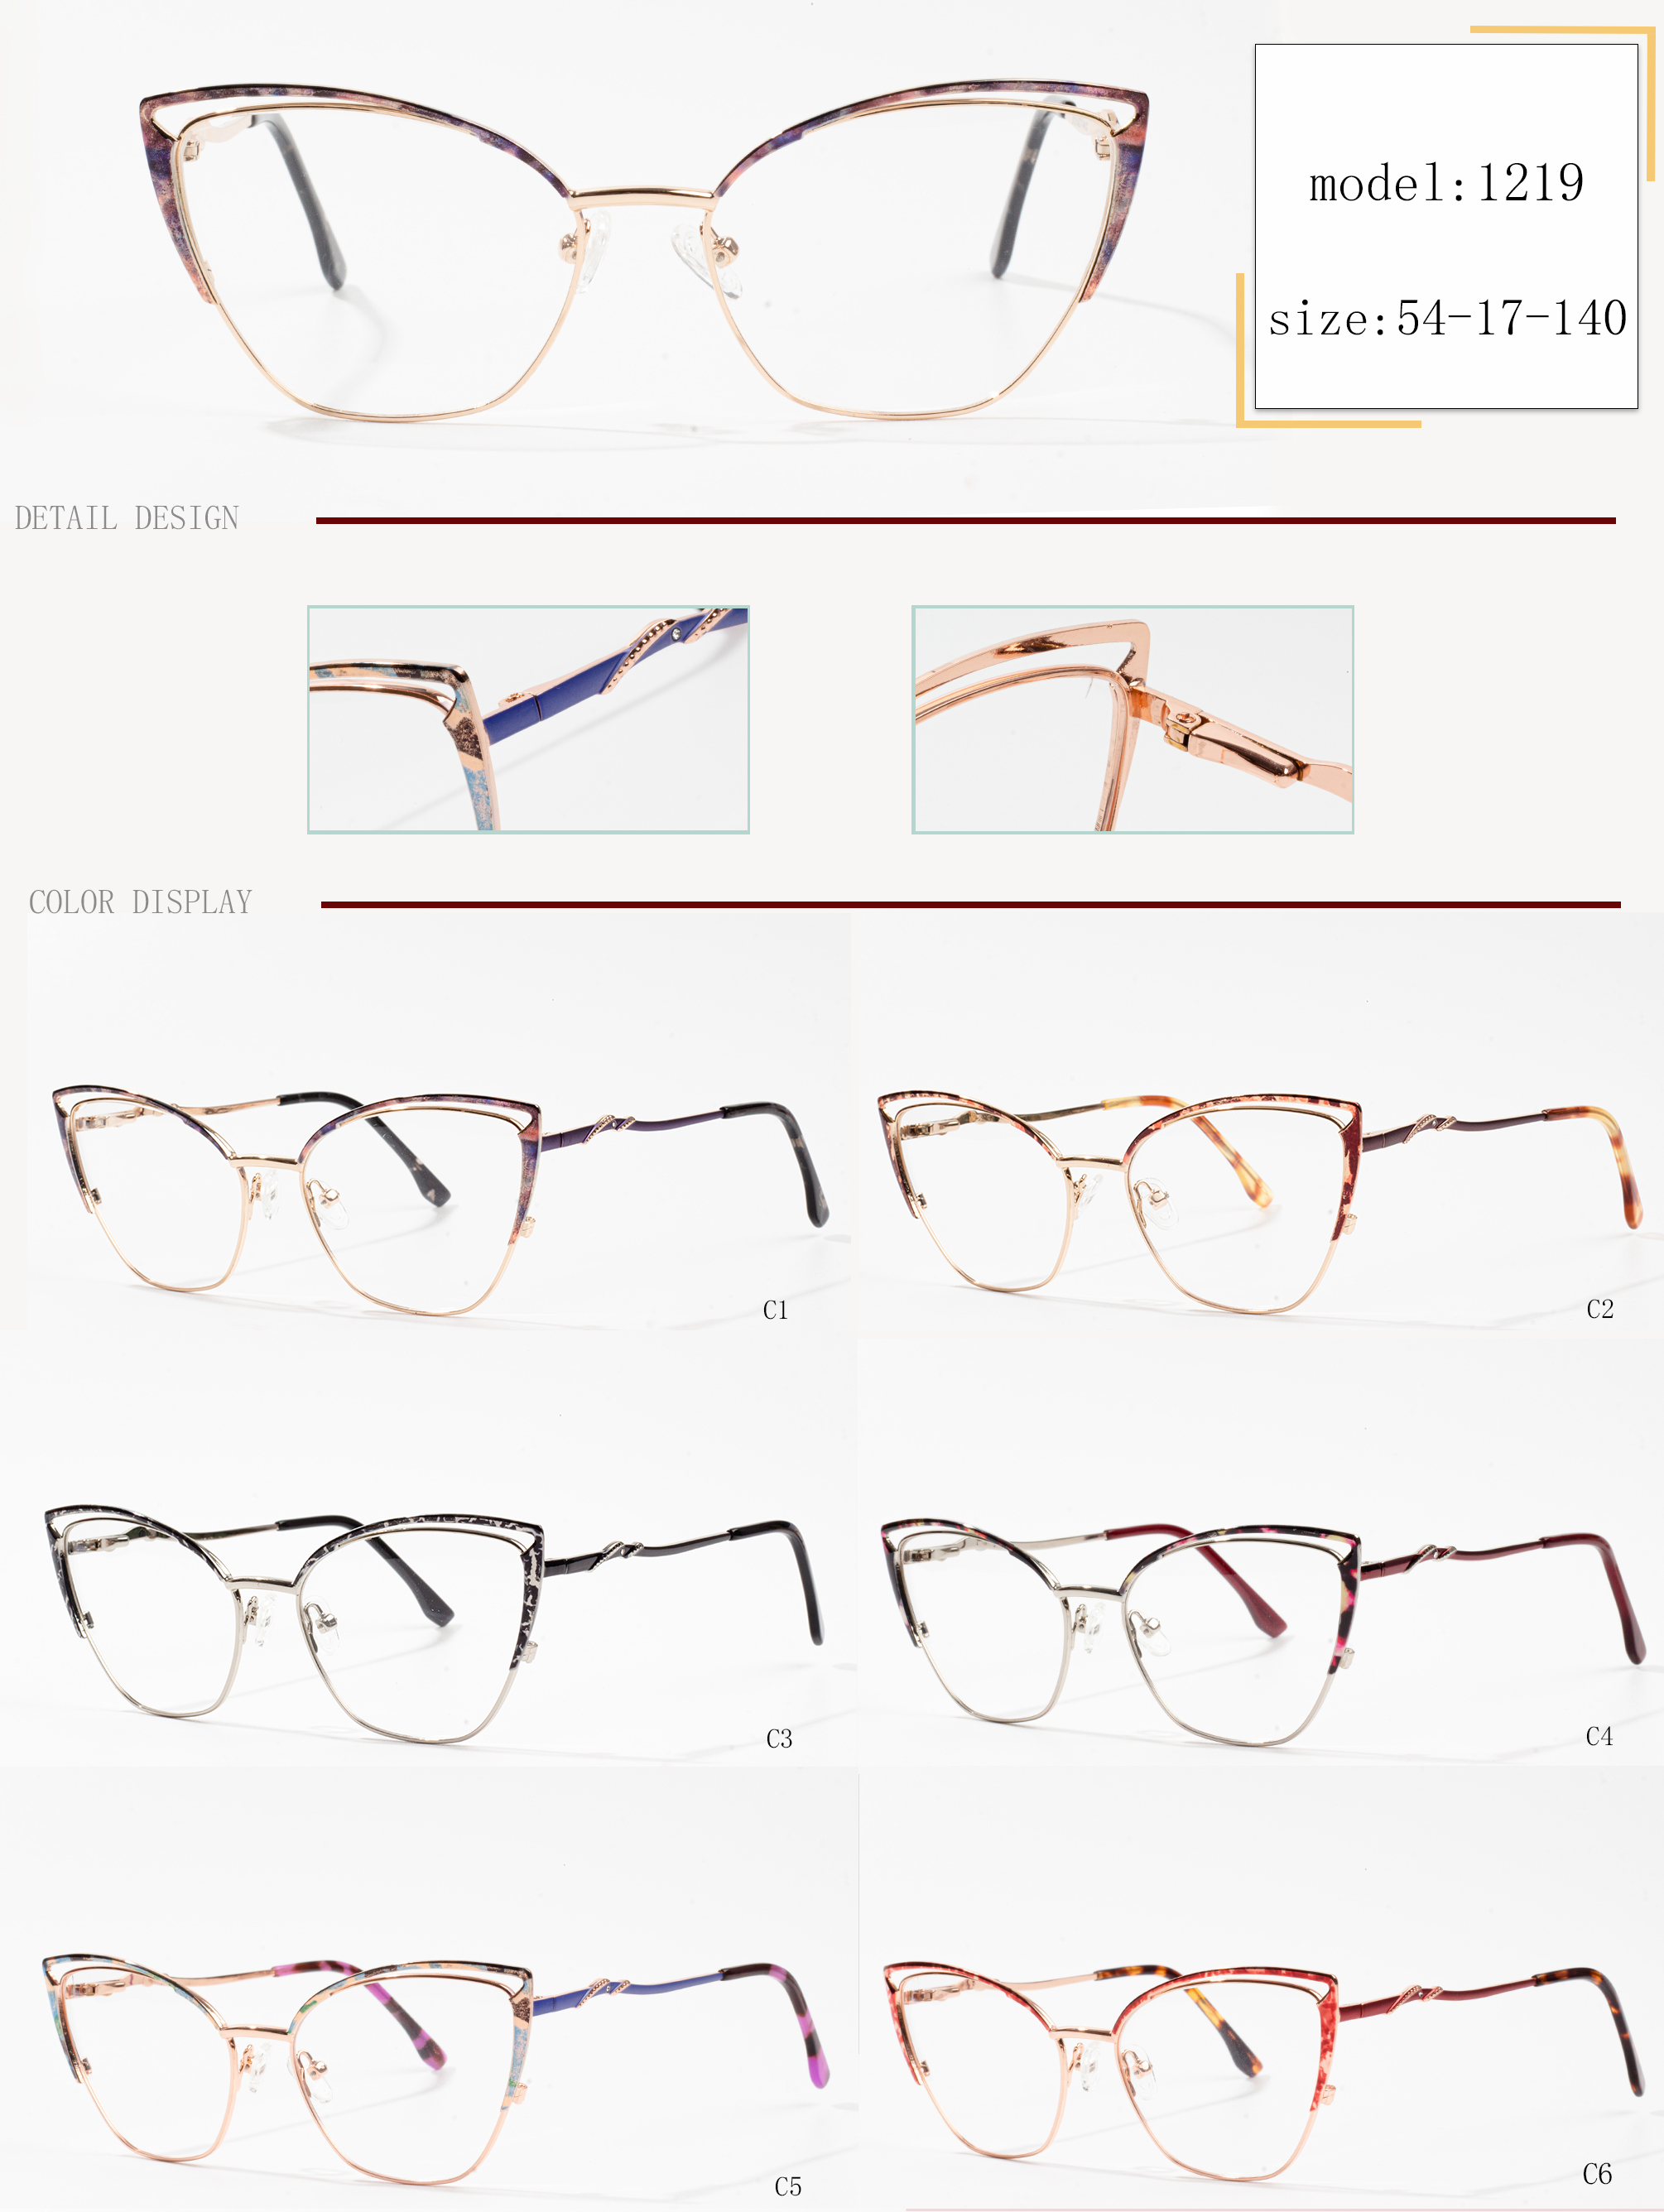 bingkai kacamata terbaik